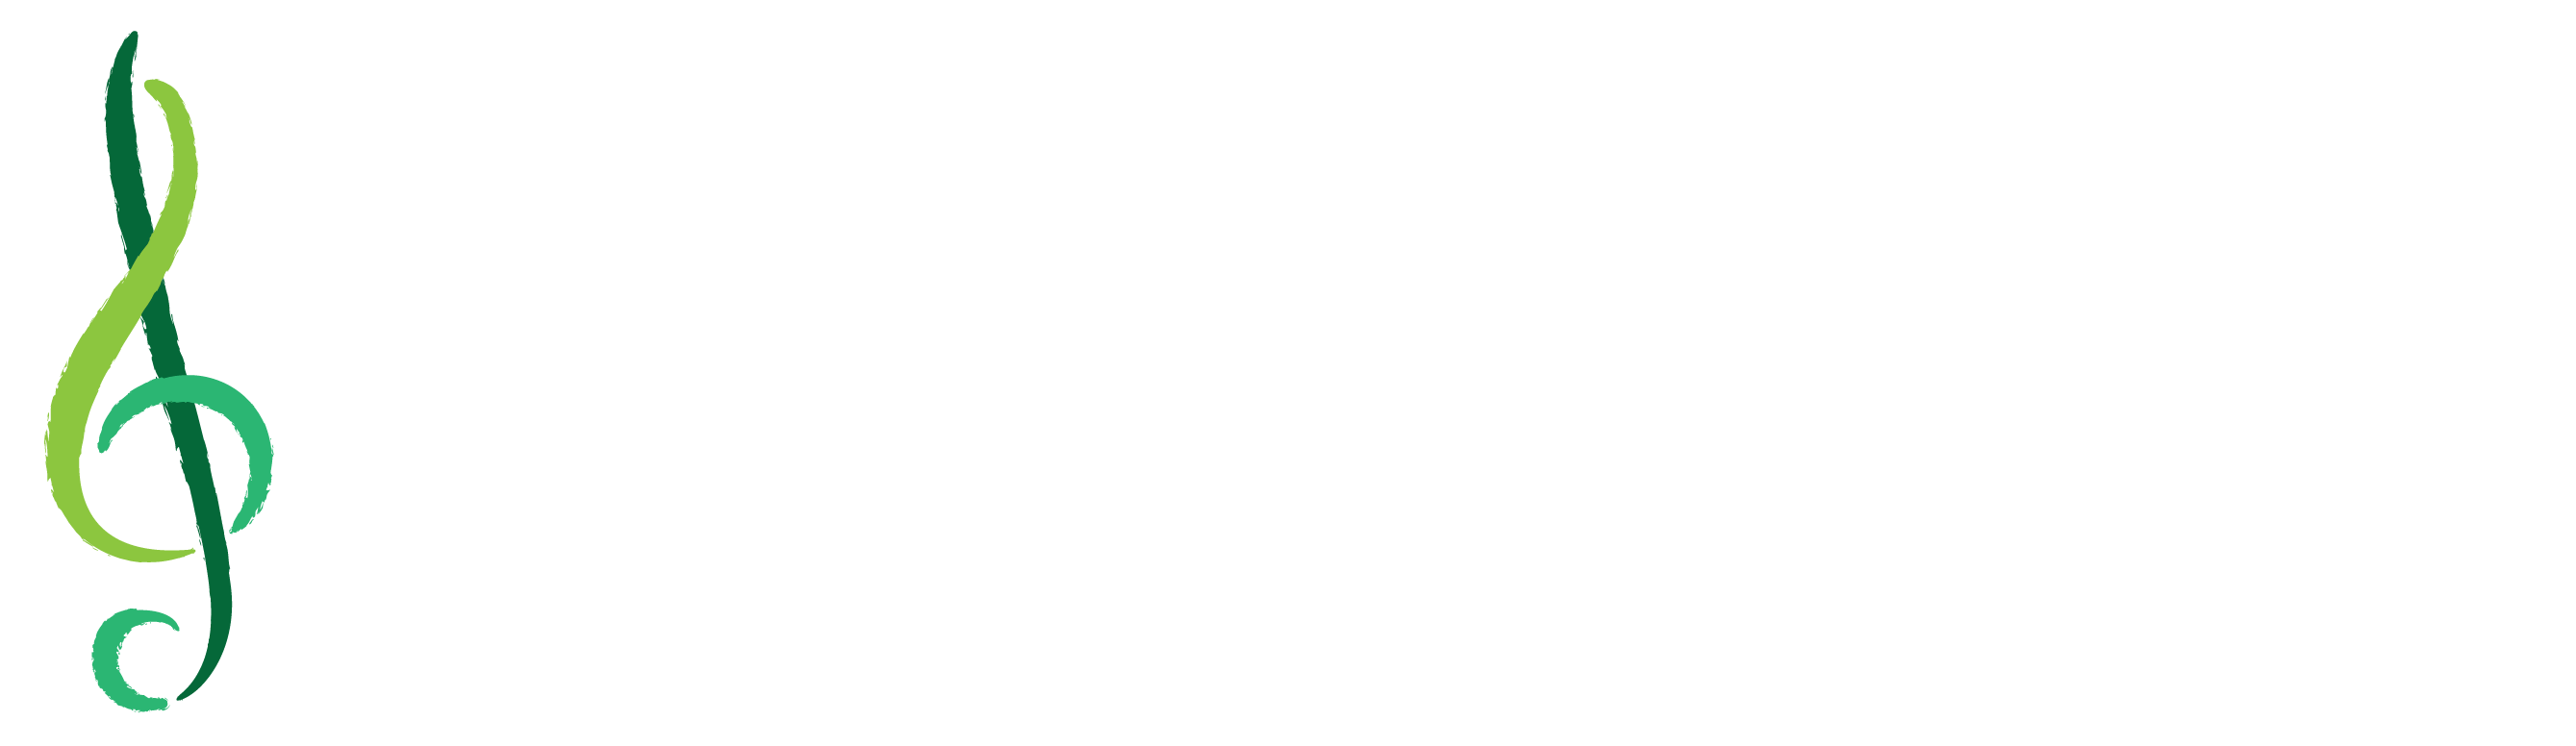 Louise Dieterle Nippert Musical Arts Fund